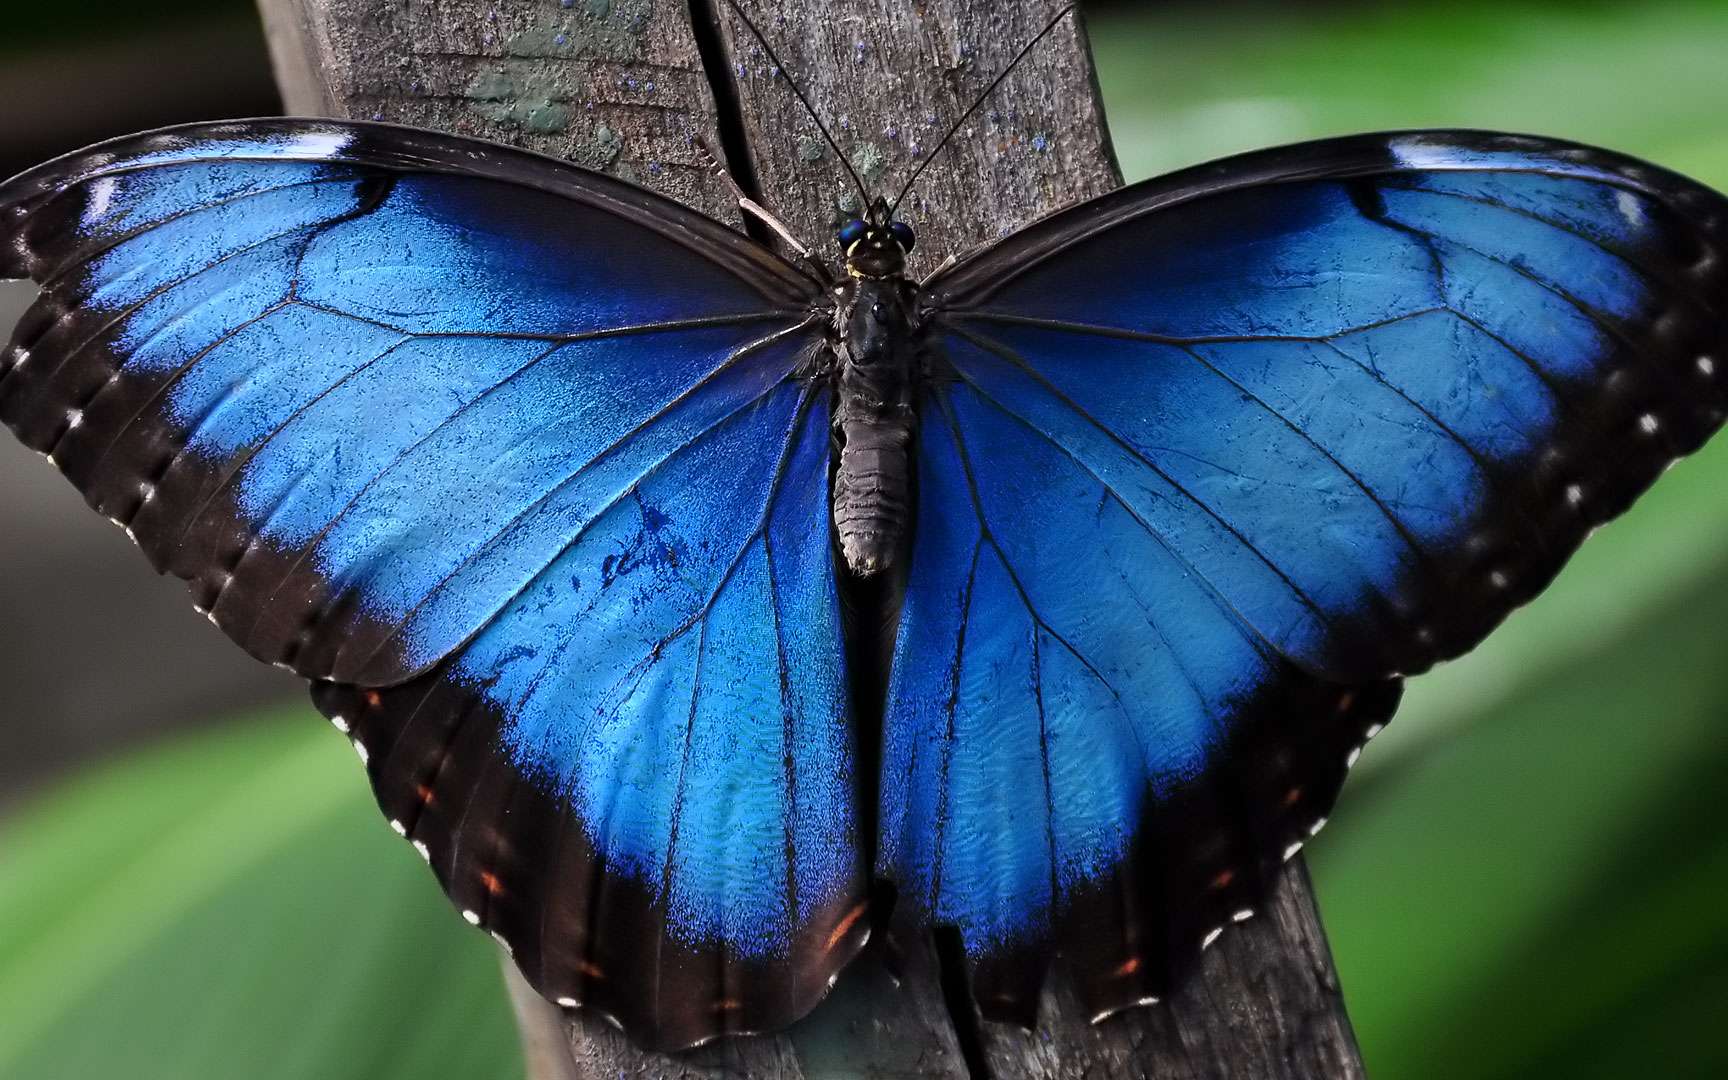 Vid 233 o Des papillons Morpho 233 mergent de leur chrysalide en time lapse